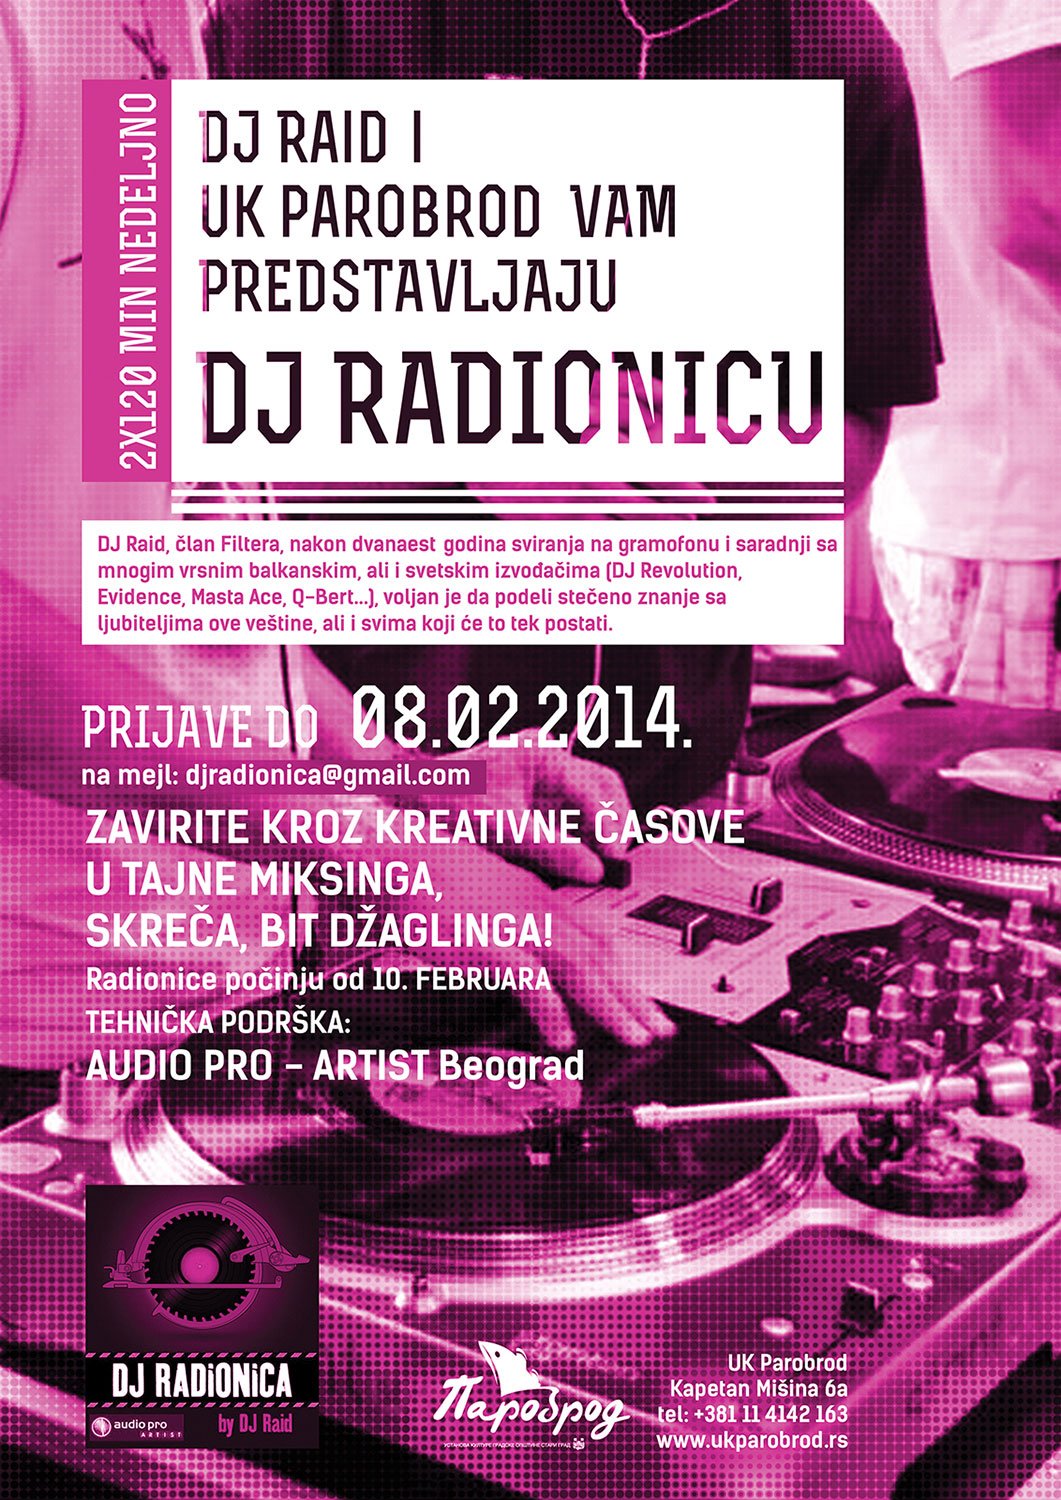 DJ Radionica net